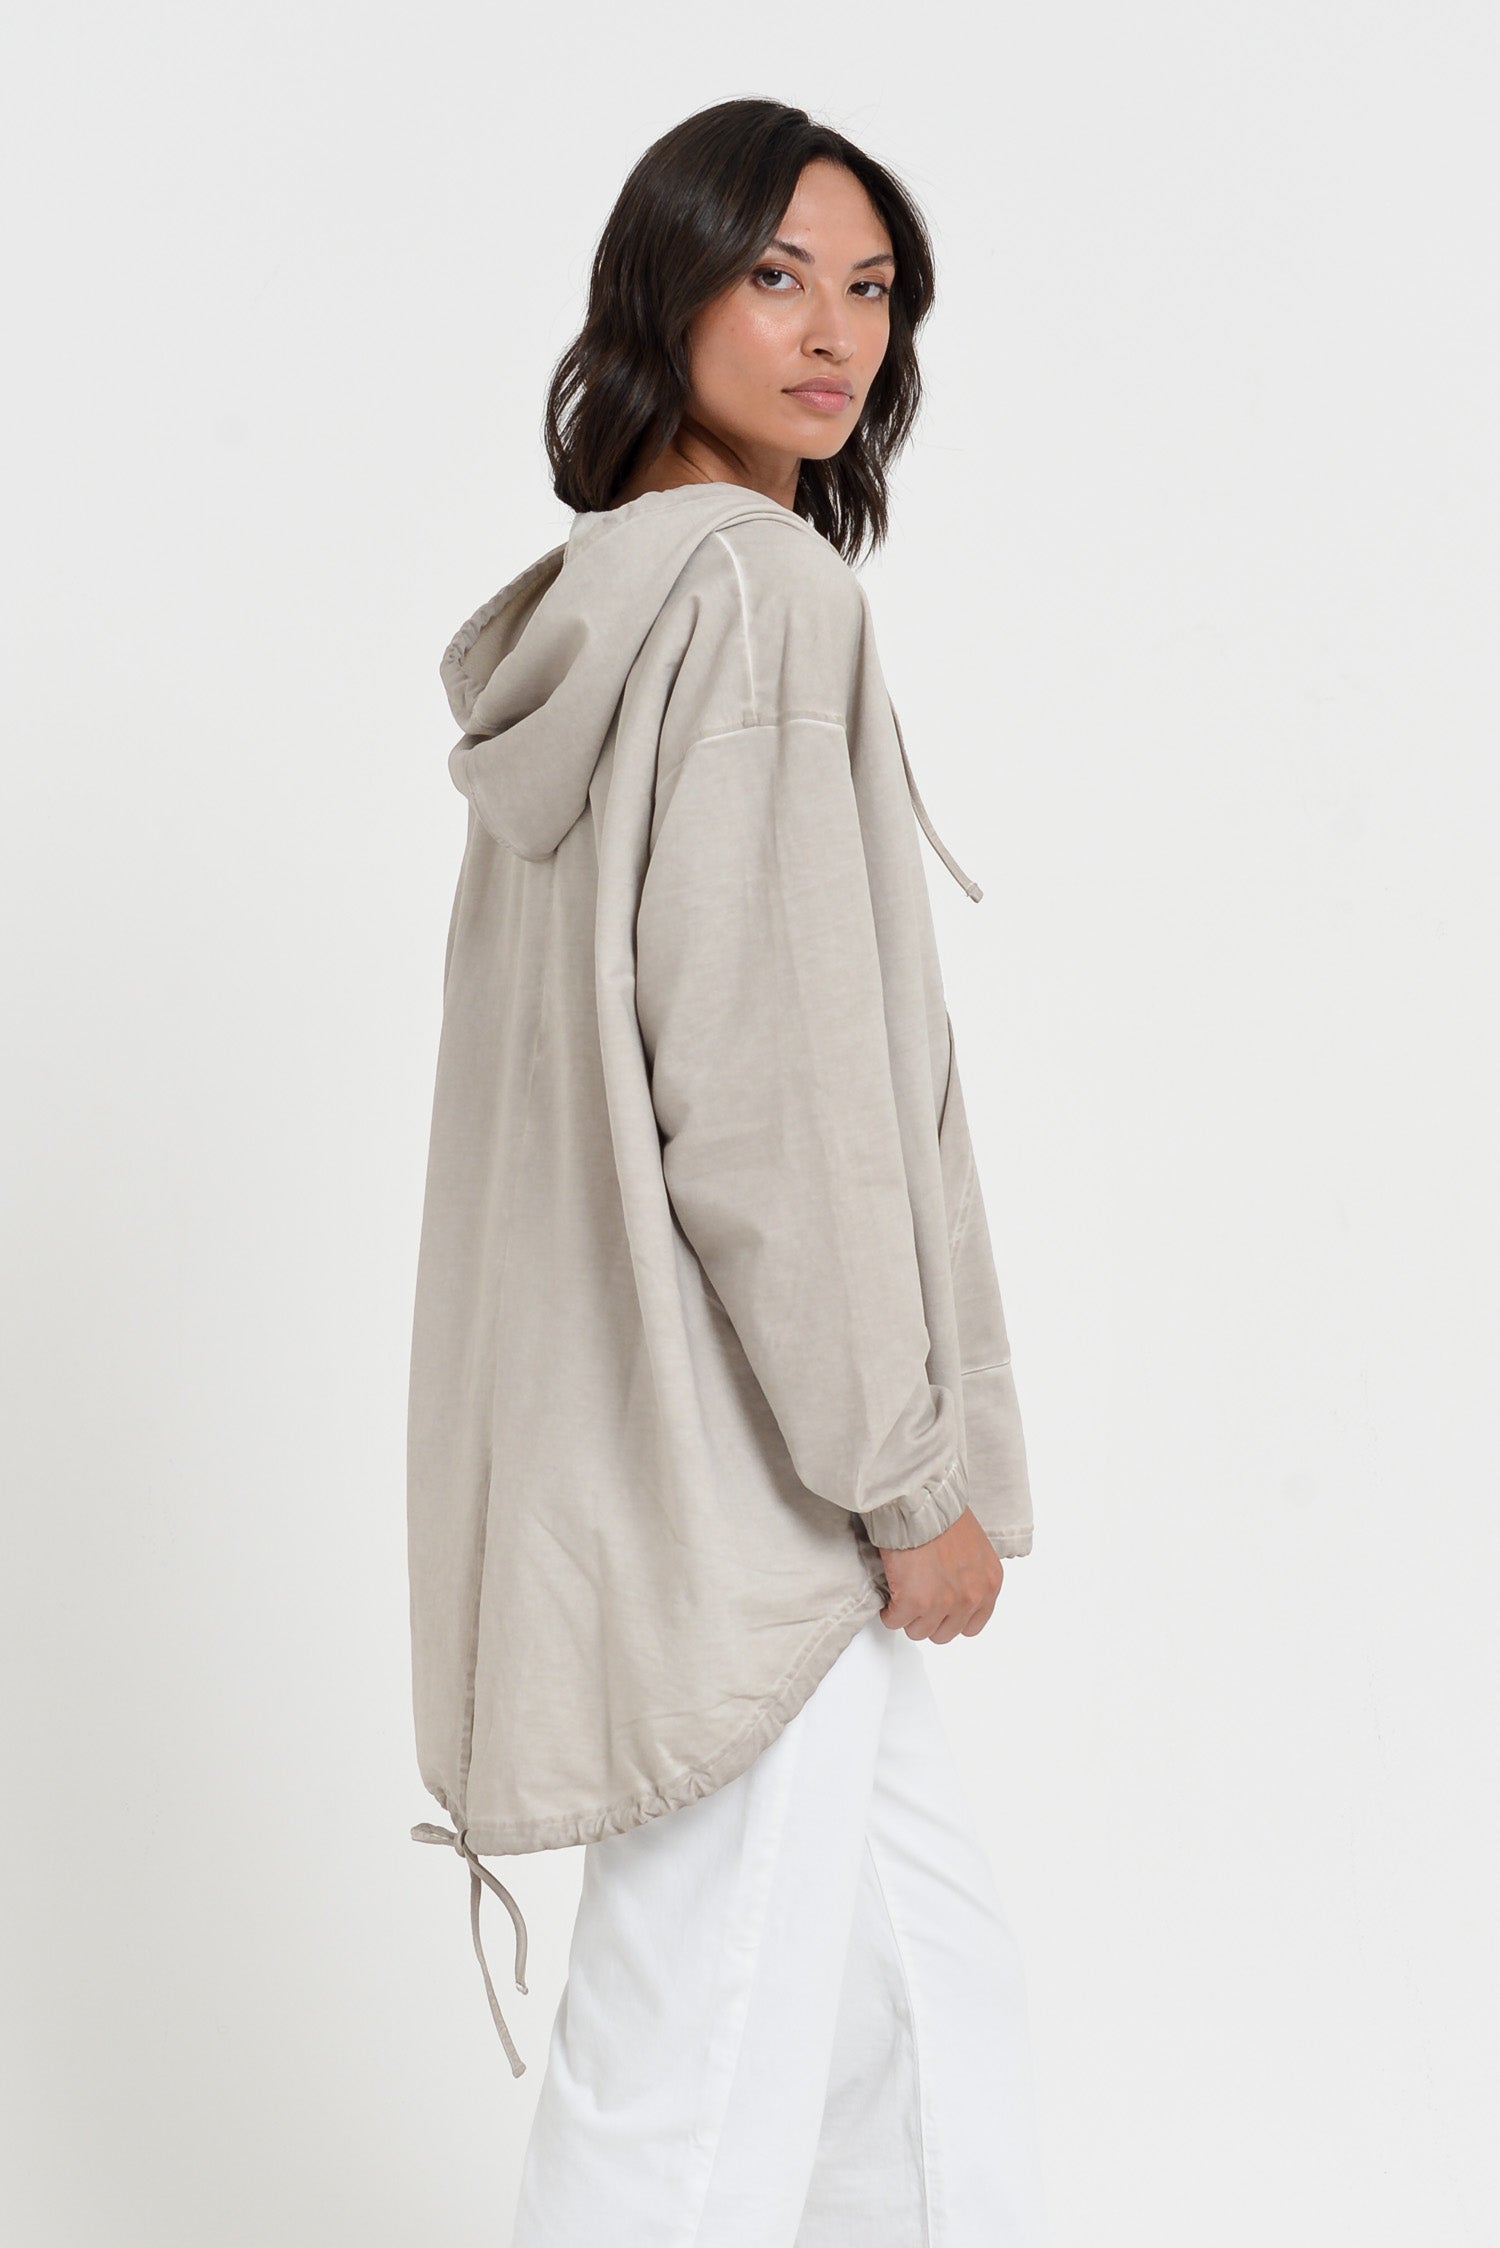 Western Parka - Women’s Full Zip Hooded Fleece Parka - Canapa